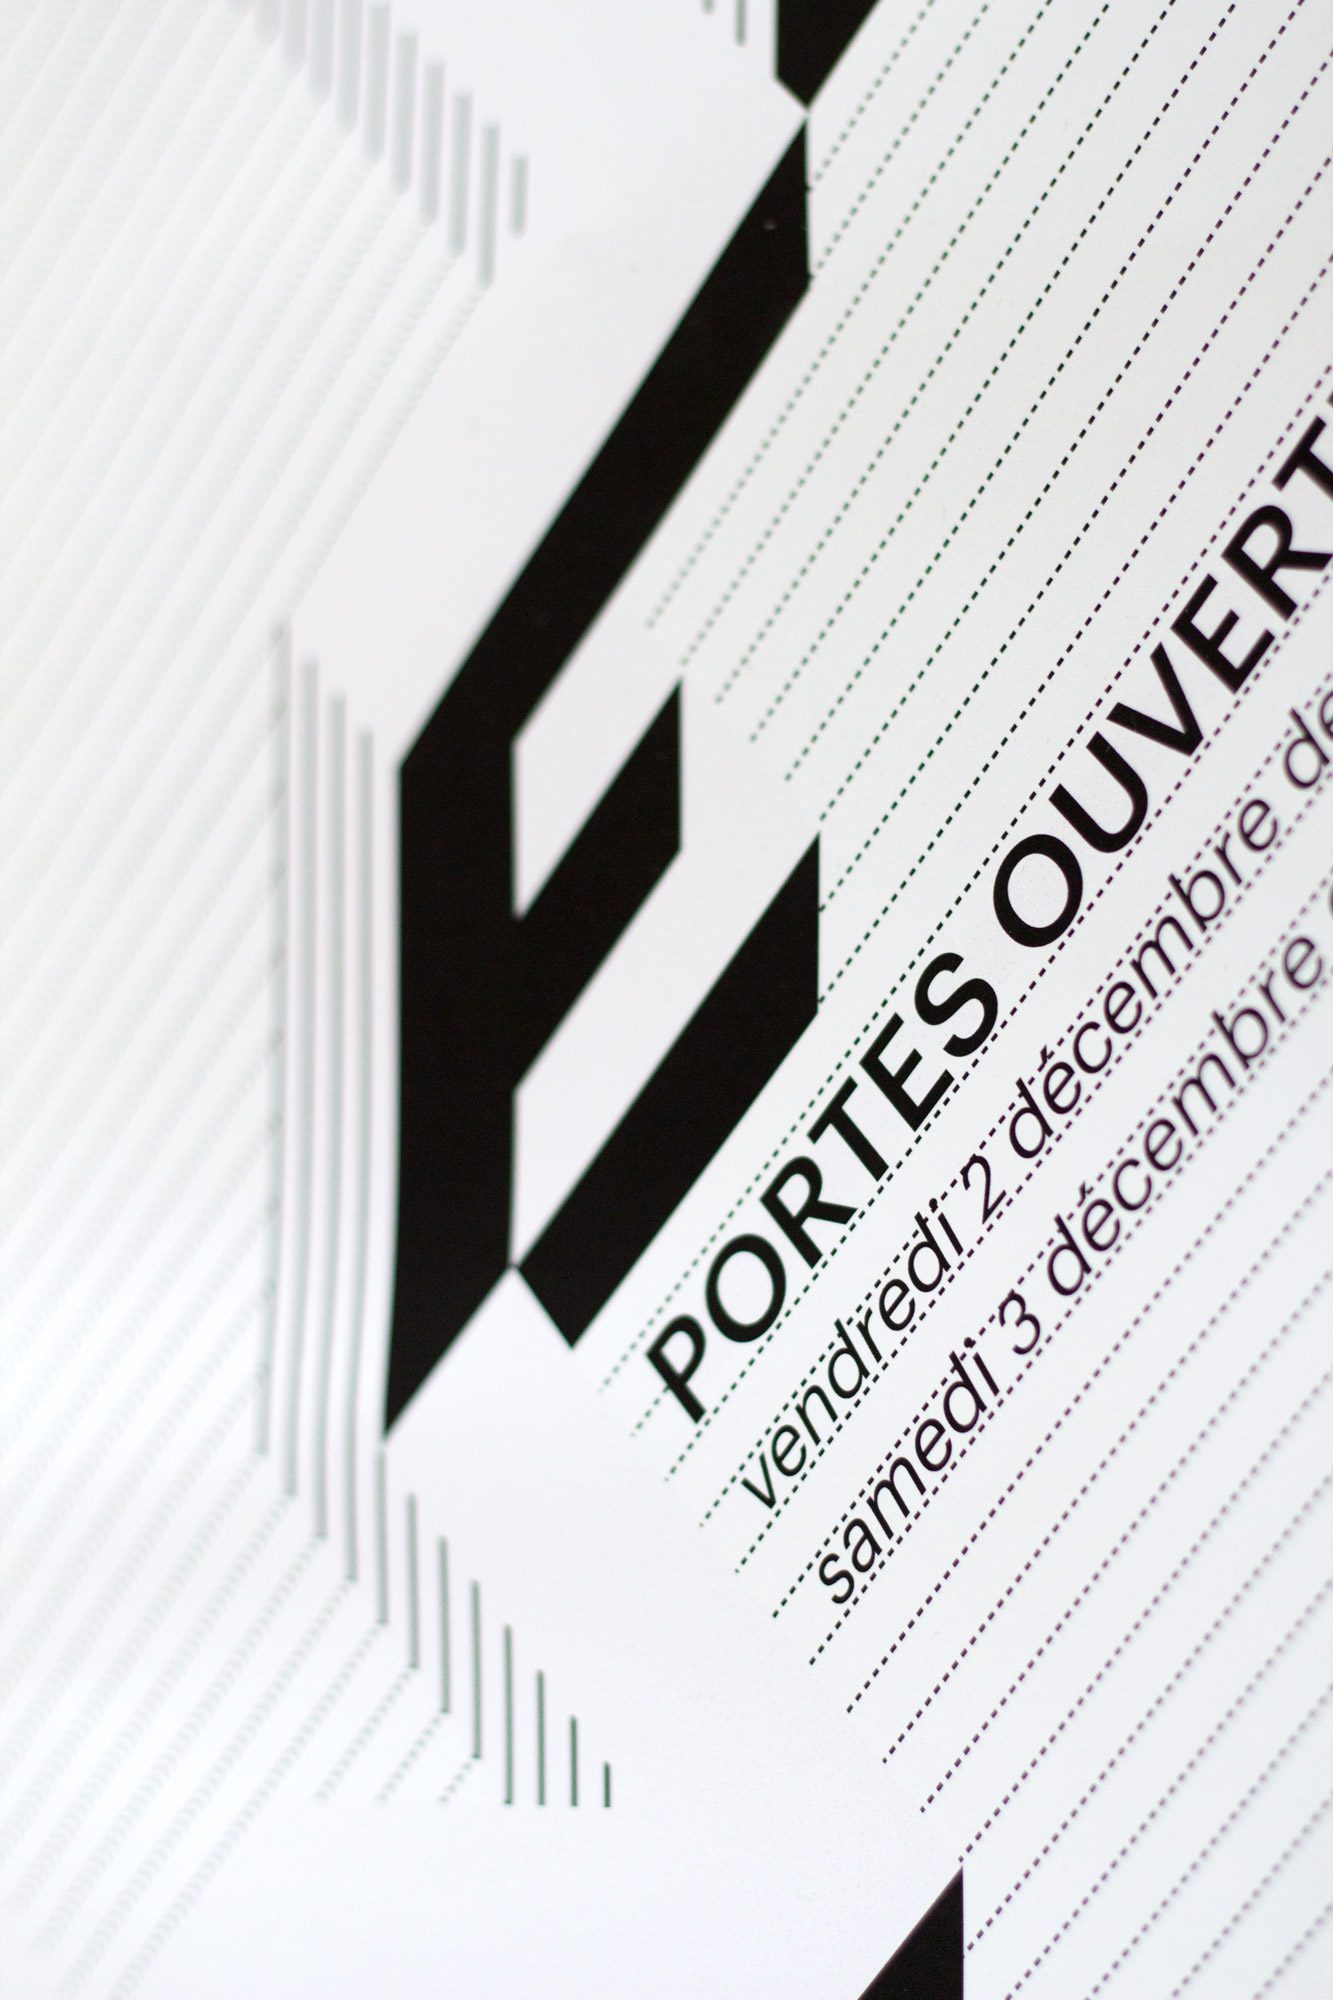 Affiche, Portes ouvertes 2011, école d'arts appliqués, La Chaux-de-Fonds, eaa, ascension, typographie, complémentarité, perspective, 3D, noir et blanc, détail